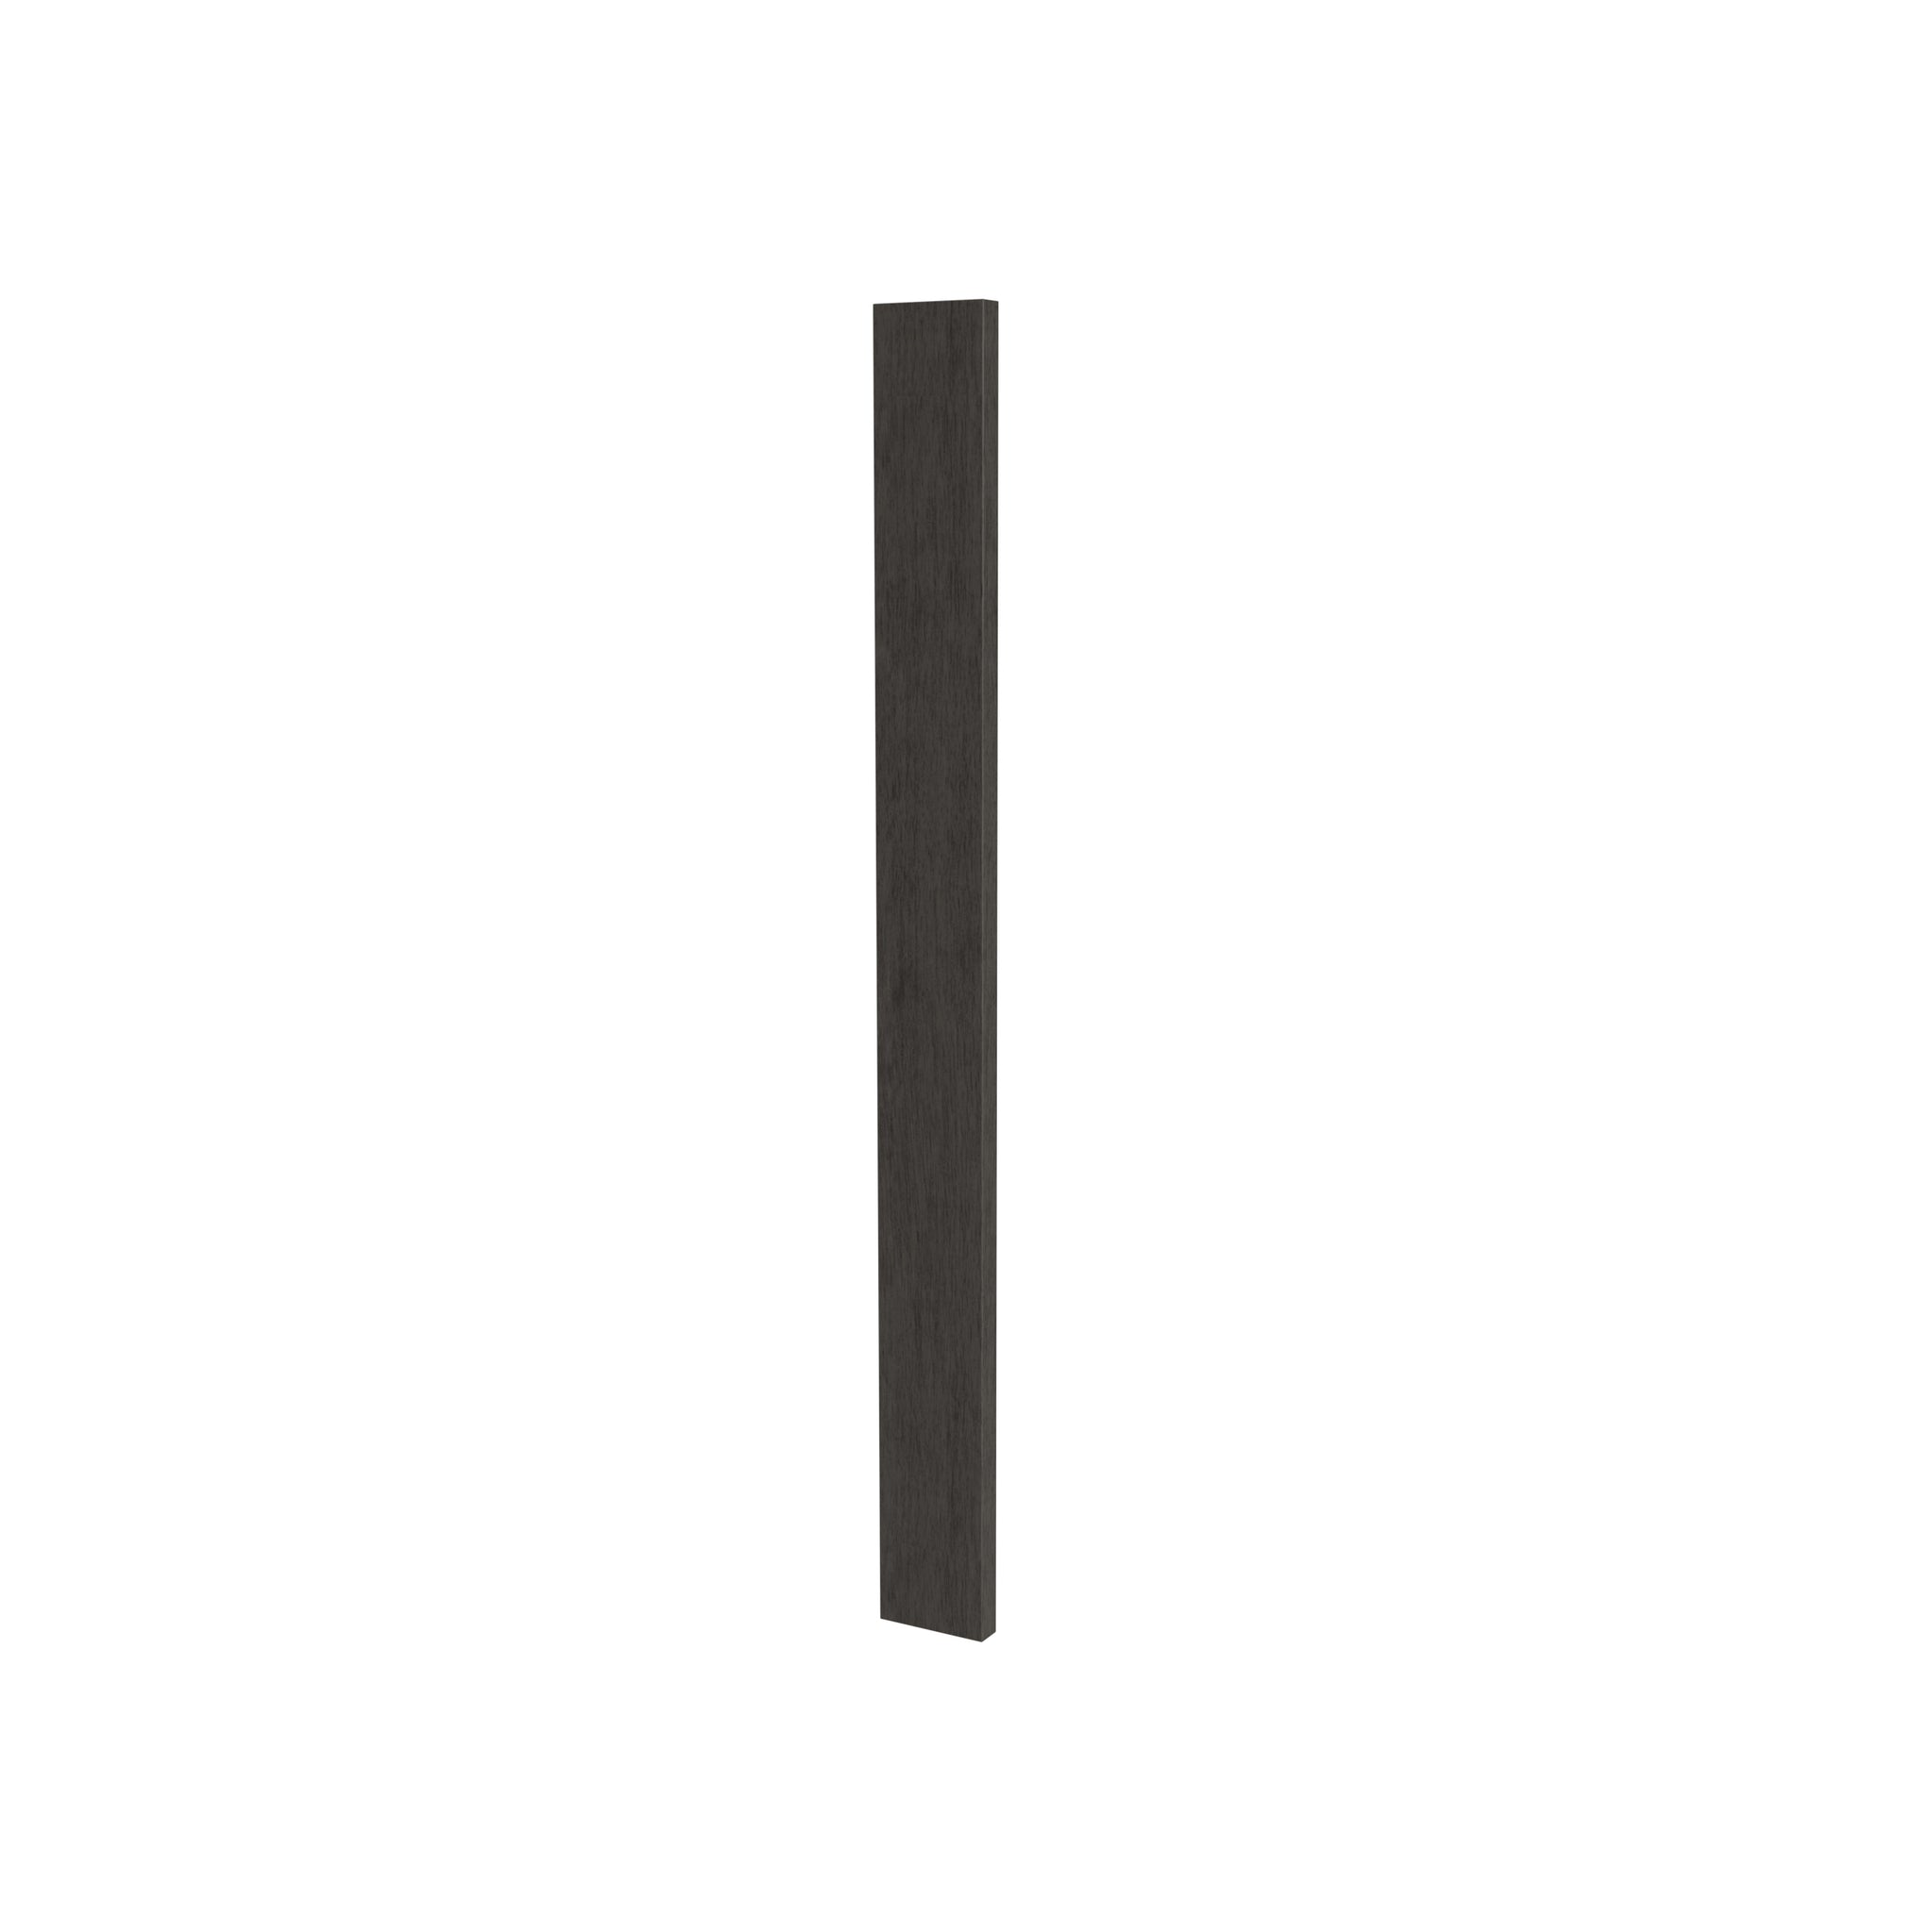 Luxor Smoky Grey - Wall Filler | 3"W x 30"H x 0.75"D